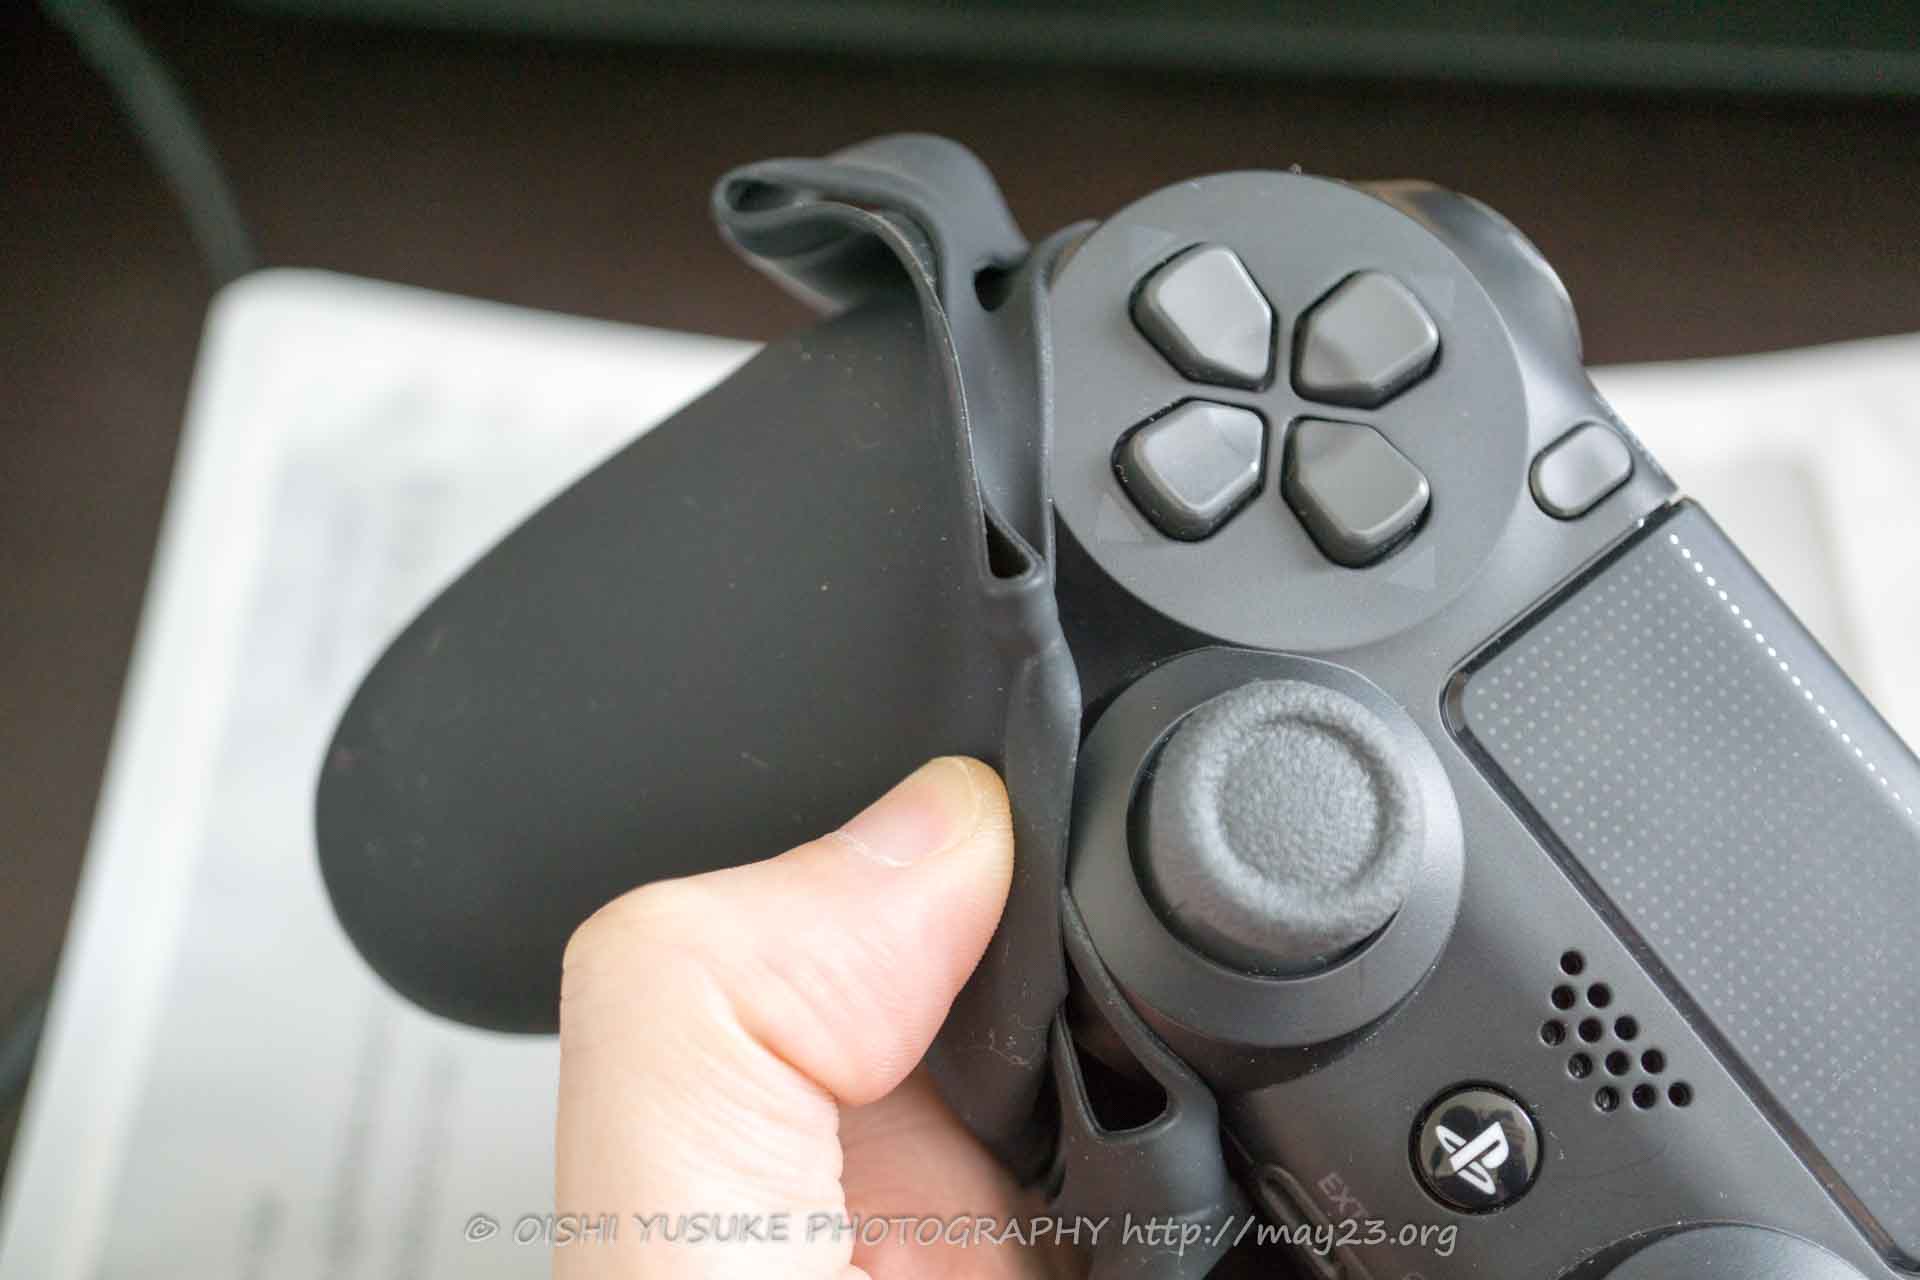 PS4コントローラー用シリコンカバーの付け方。手汗・手垢対策に 